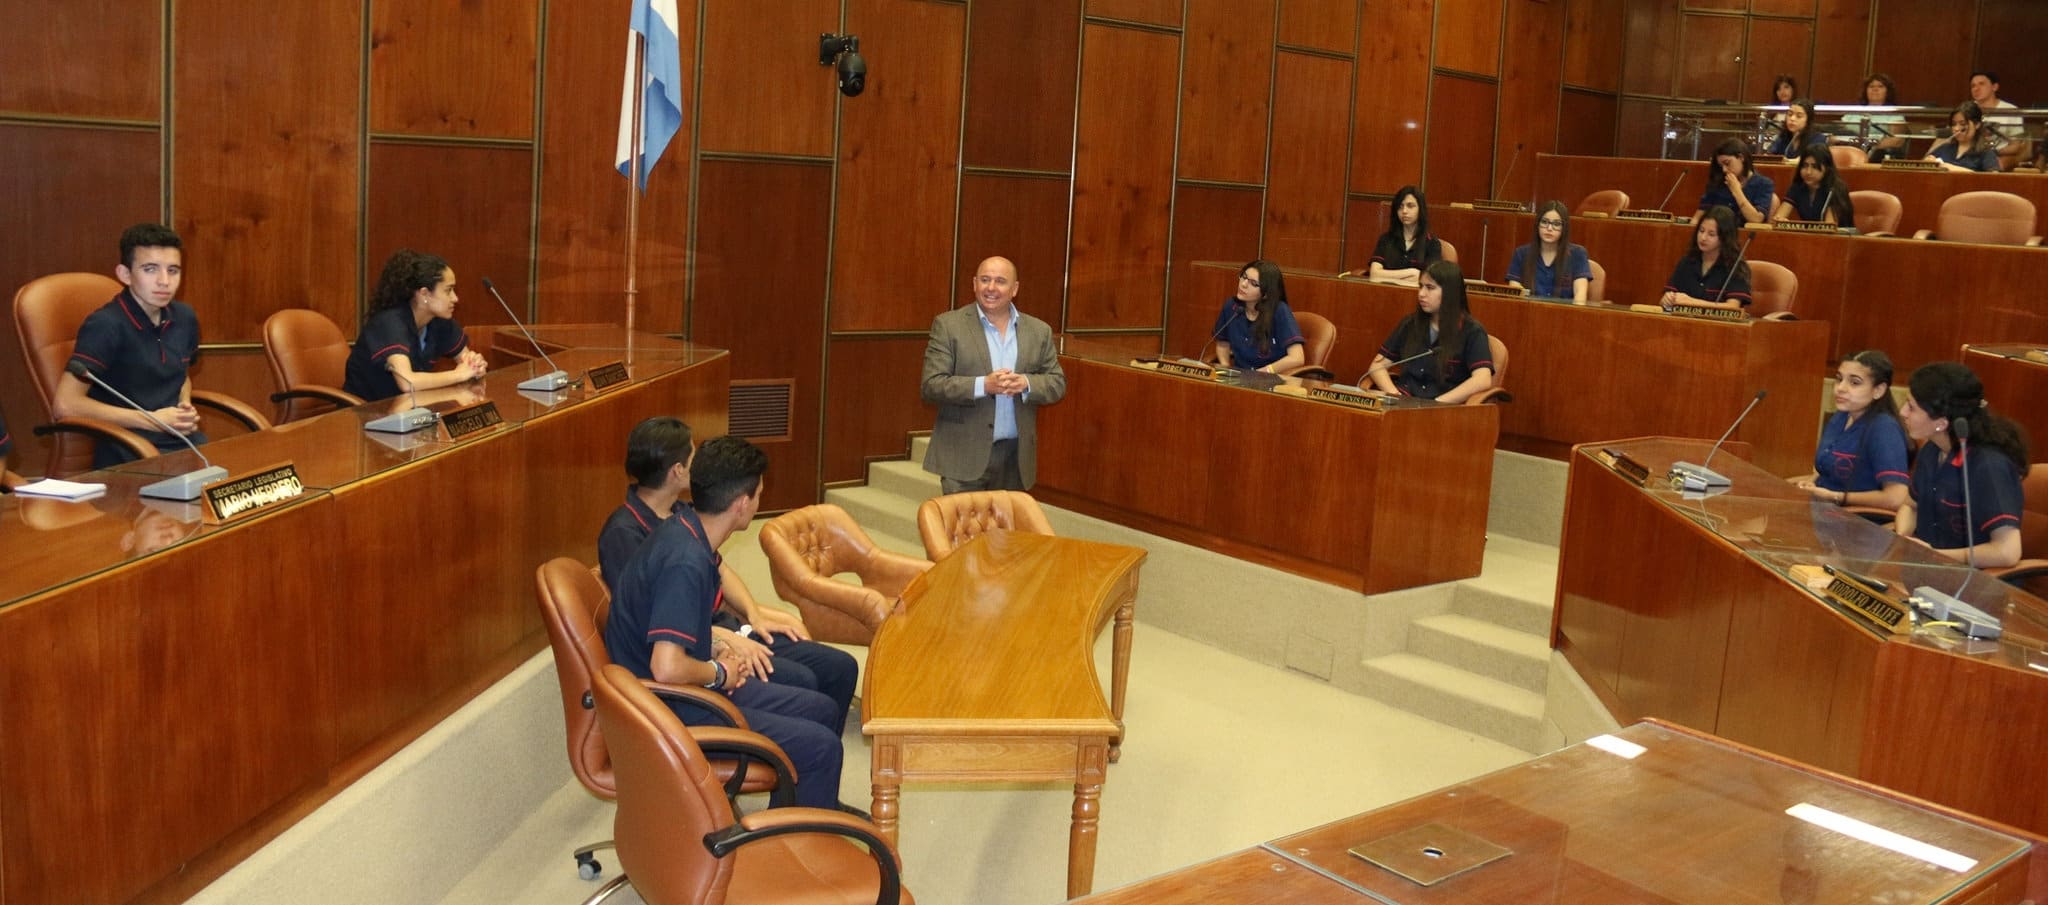 El diputado Pablo García Nieto junto a estudiantes y docentes del colegio "Juan Pablo II" en la Cámara de Diputados. 